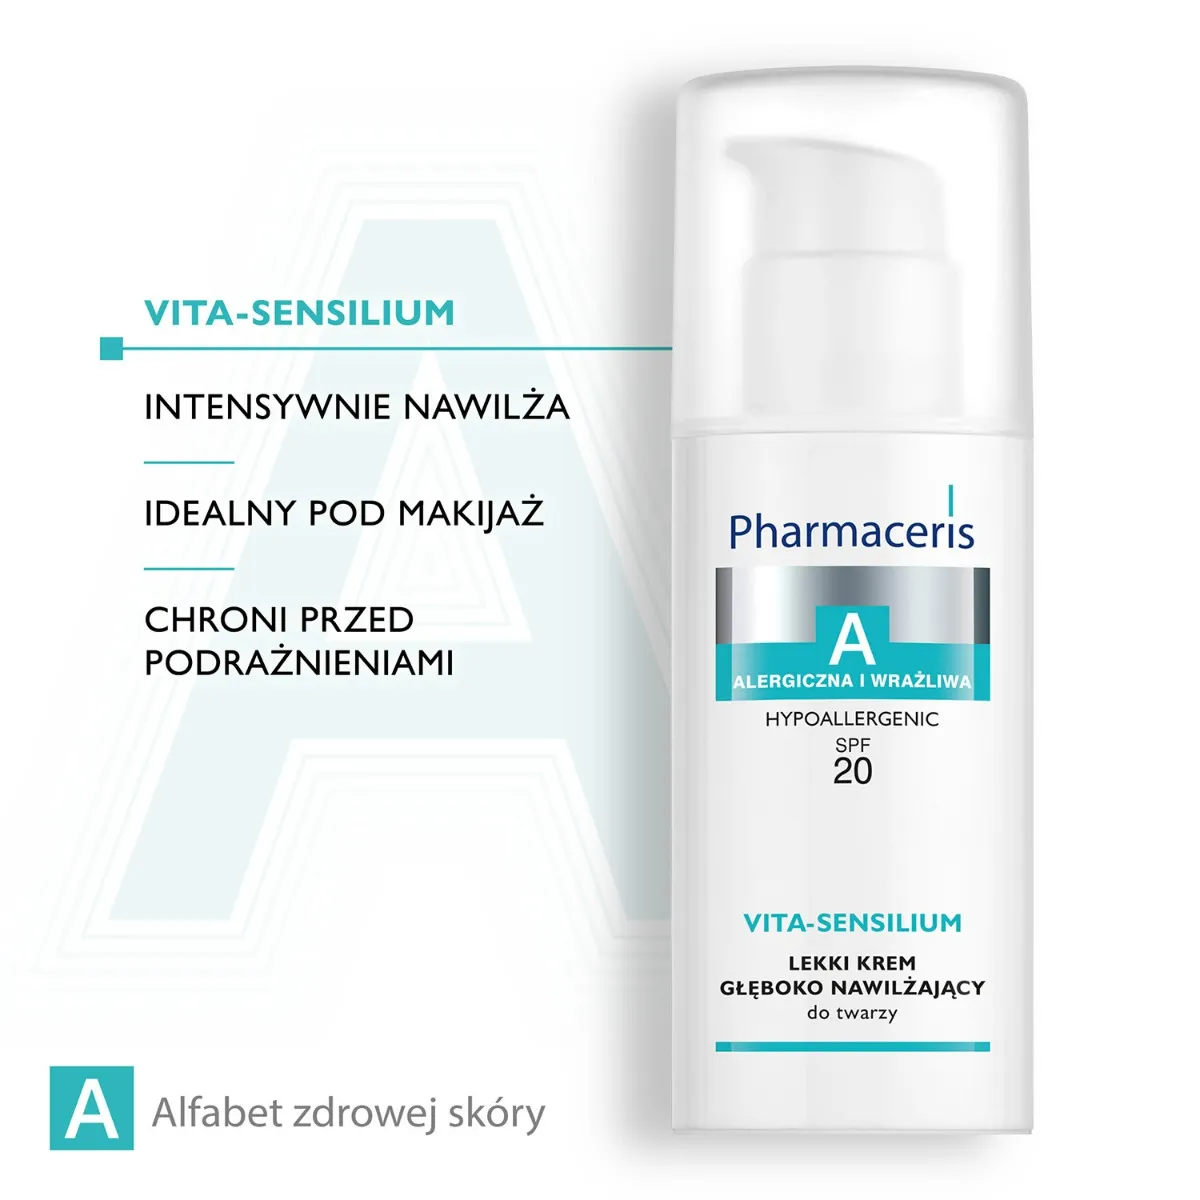 Pharmaceris A Vita-sensilium lekki krem głęboko nawilżający do twarzy, SPF 20 / 50 ml 